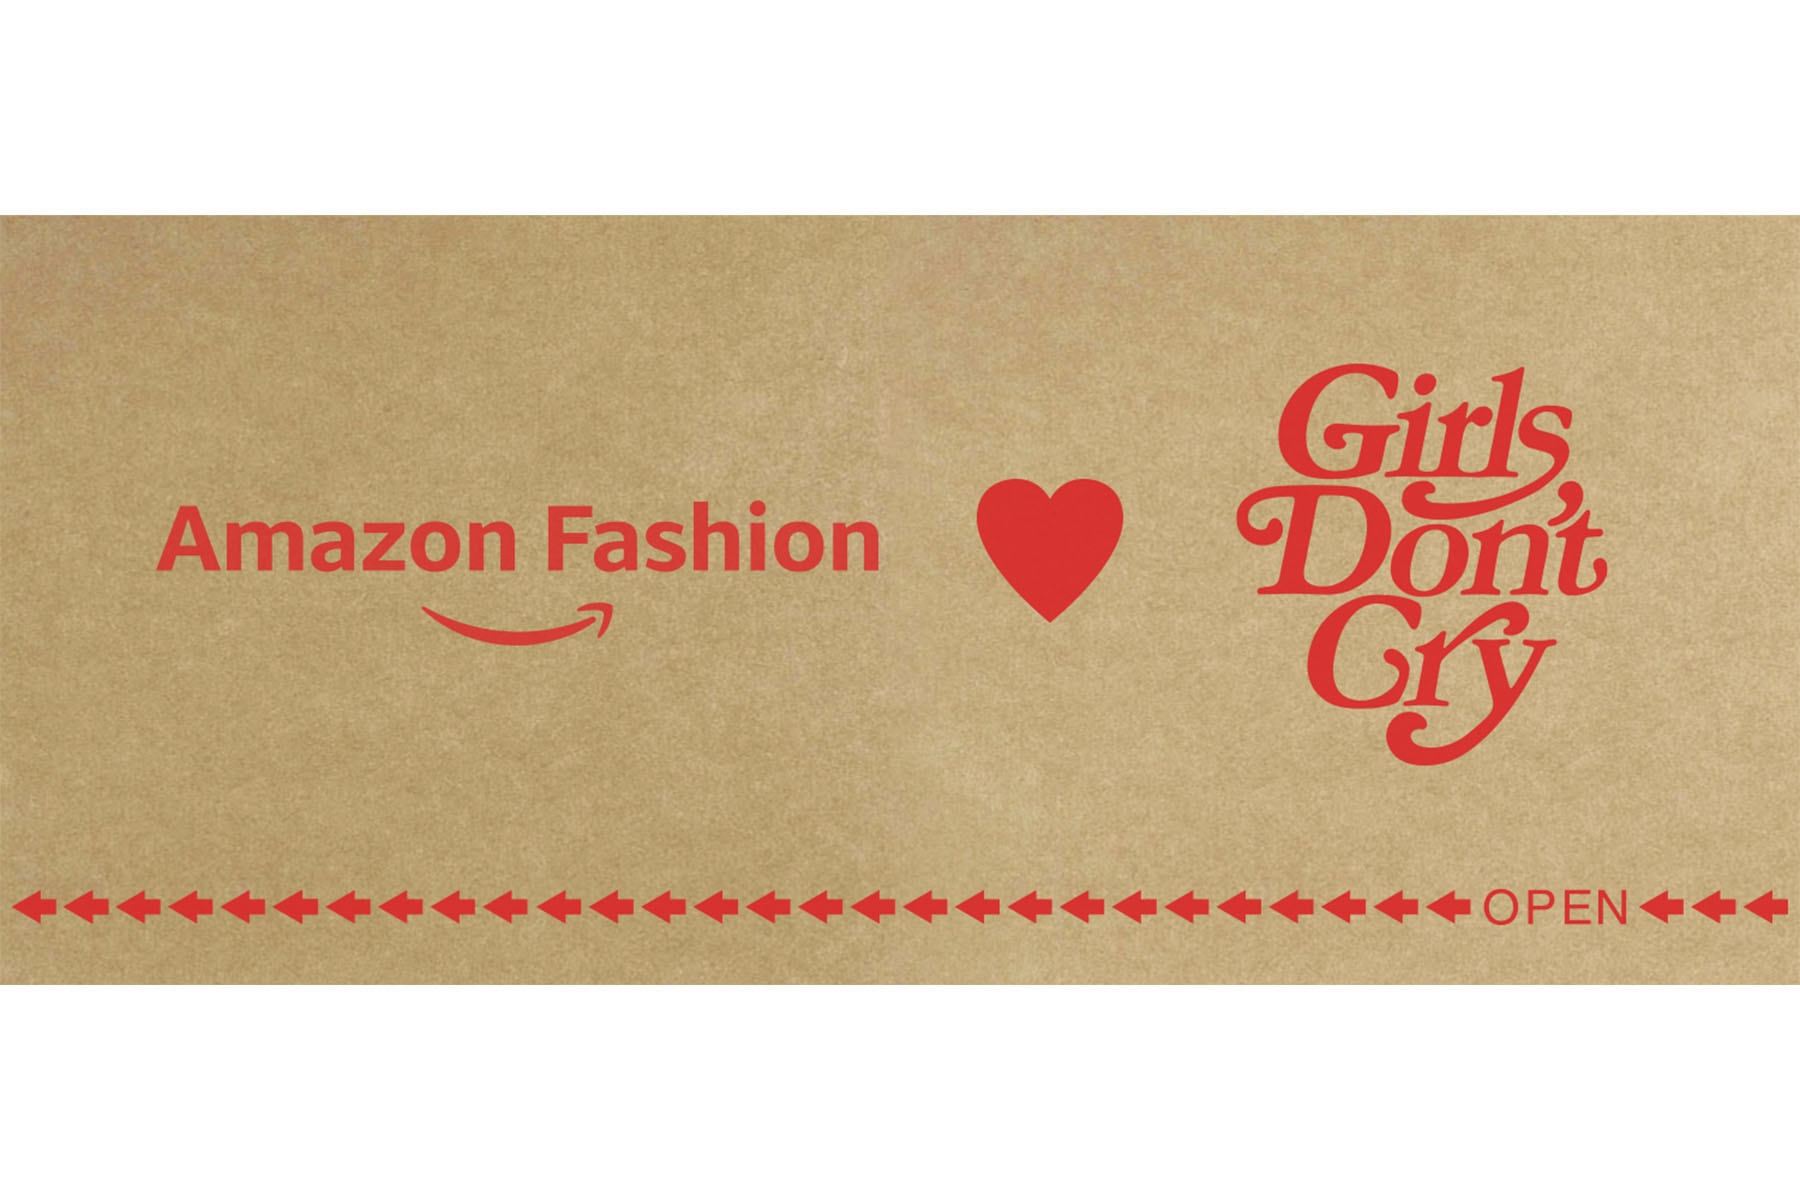 ガールズ ドント クライ VERDY 手がける Girls Don’t Cry が Amazon Fashion "AT TOKYO” に登場 